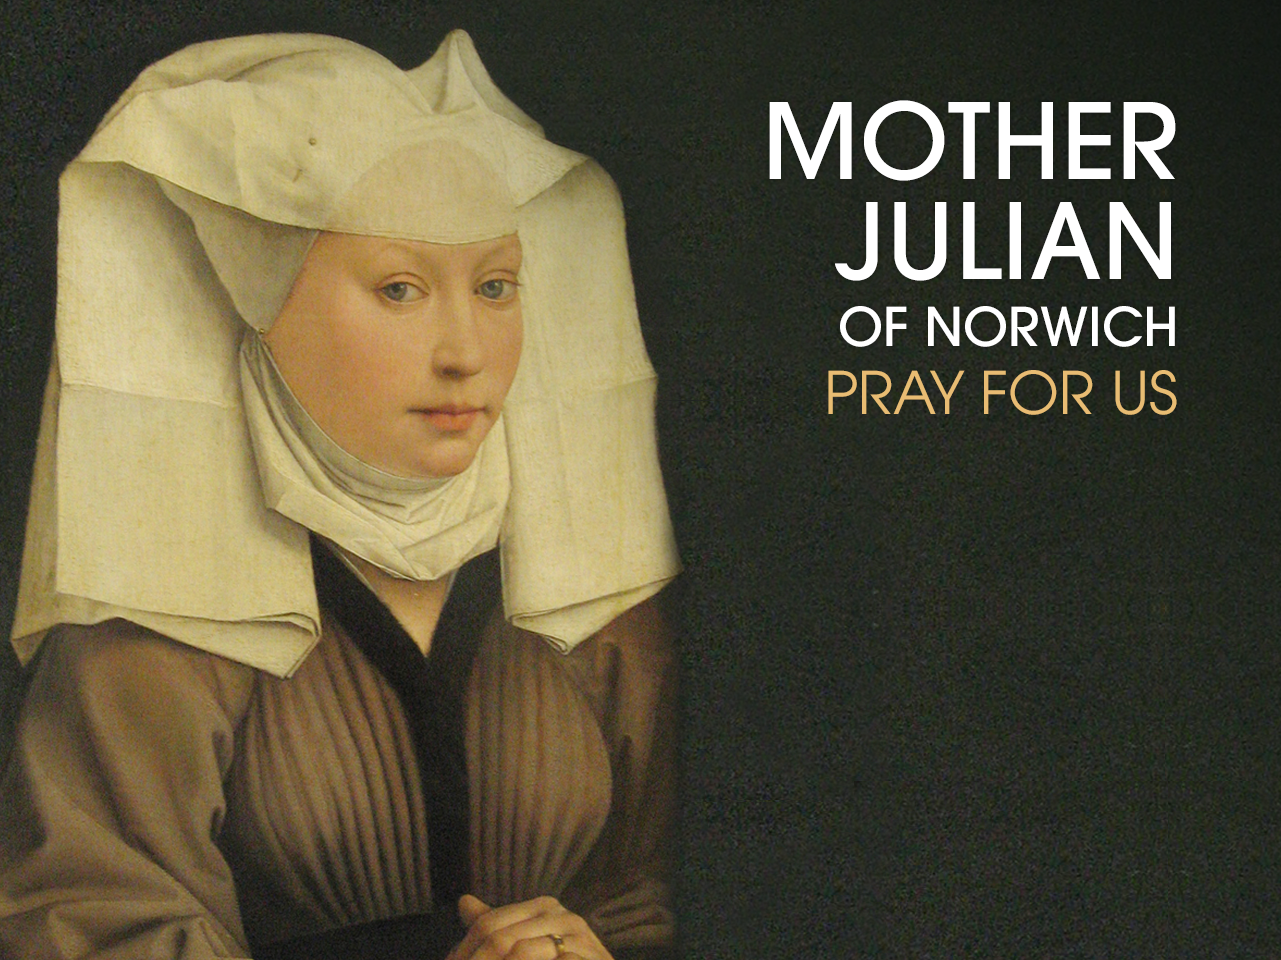 Julian/Juliana of Norwich